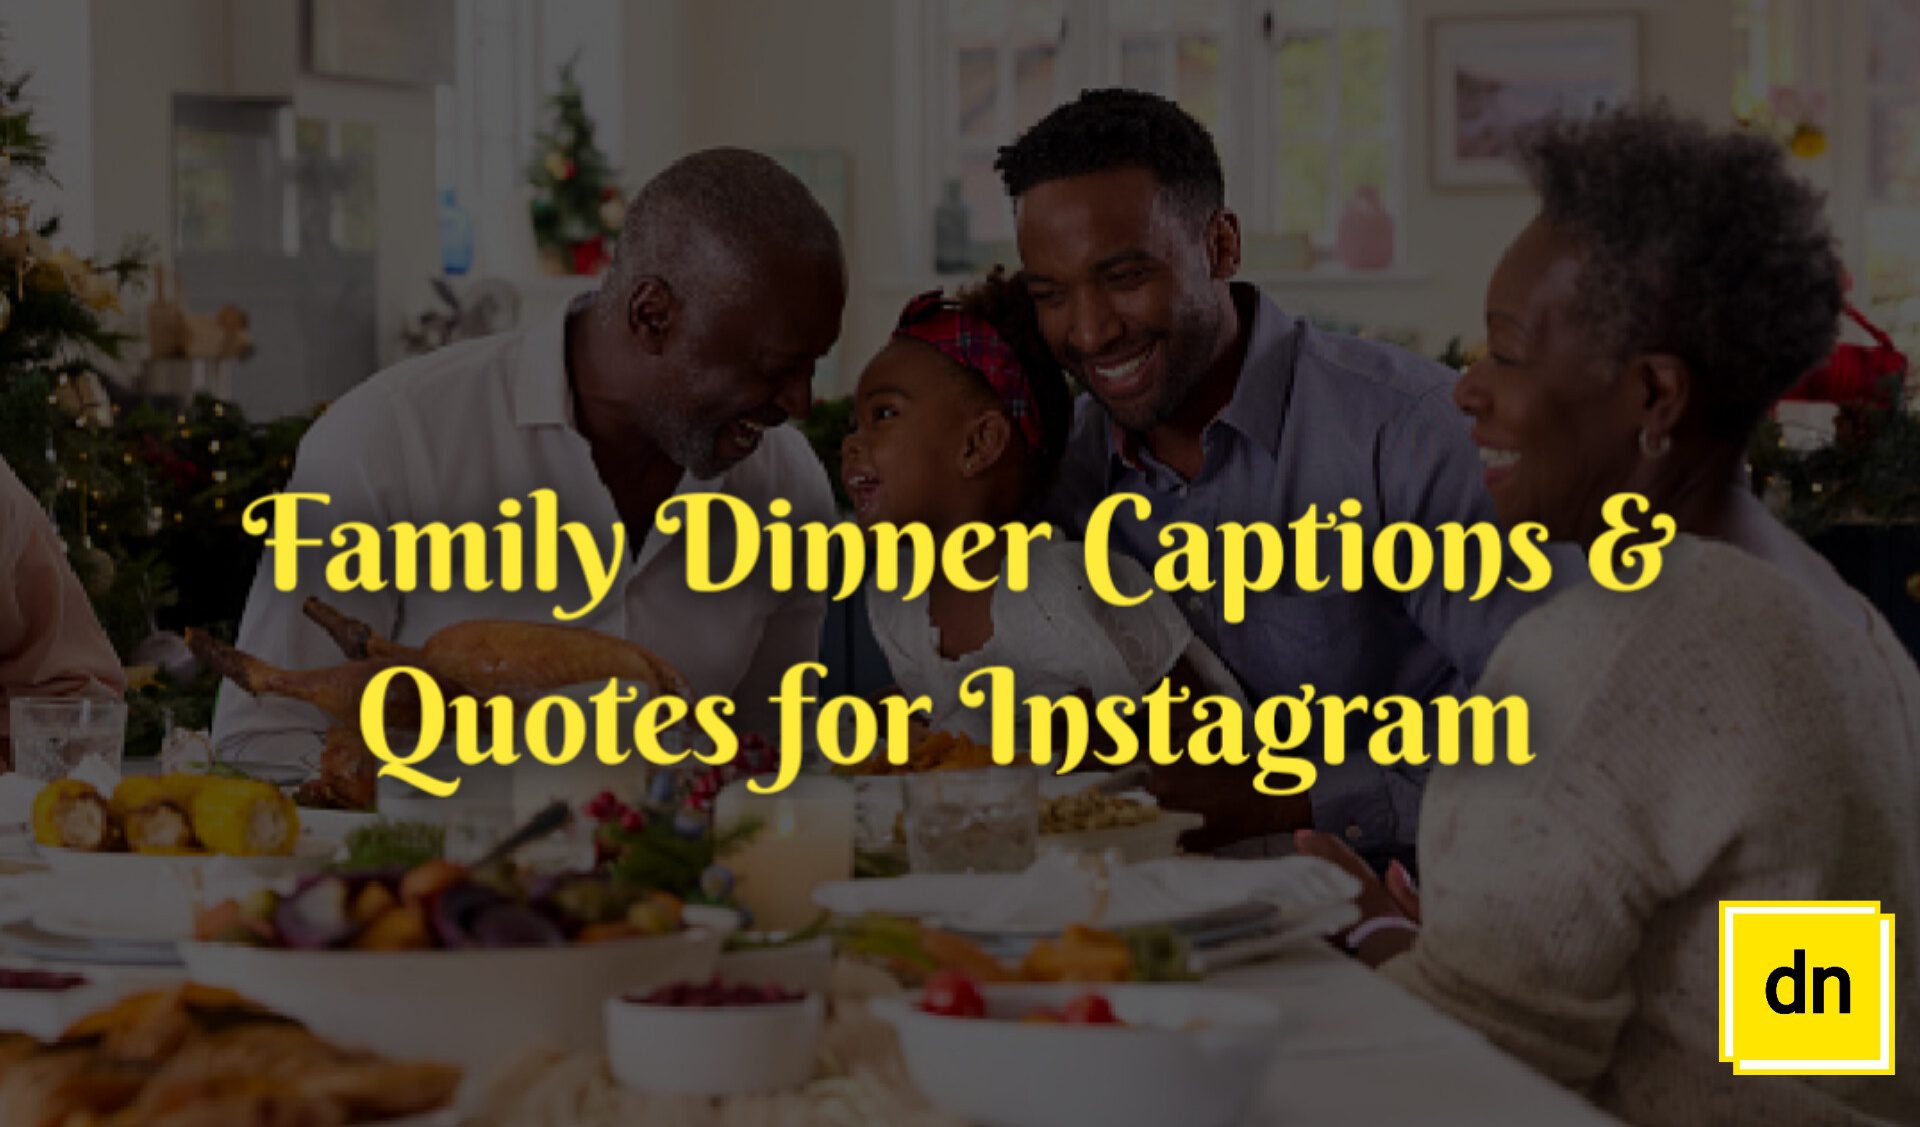 Family dinner captions for Instagram